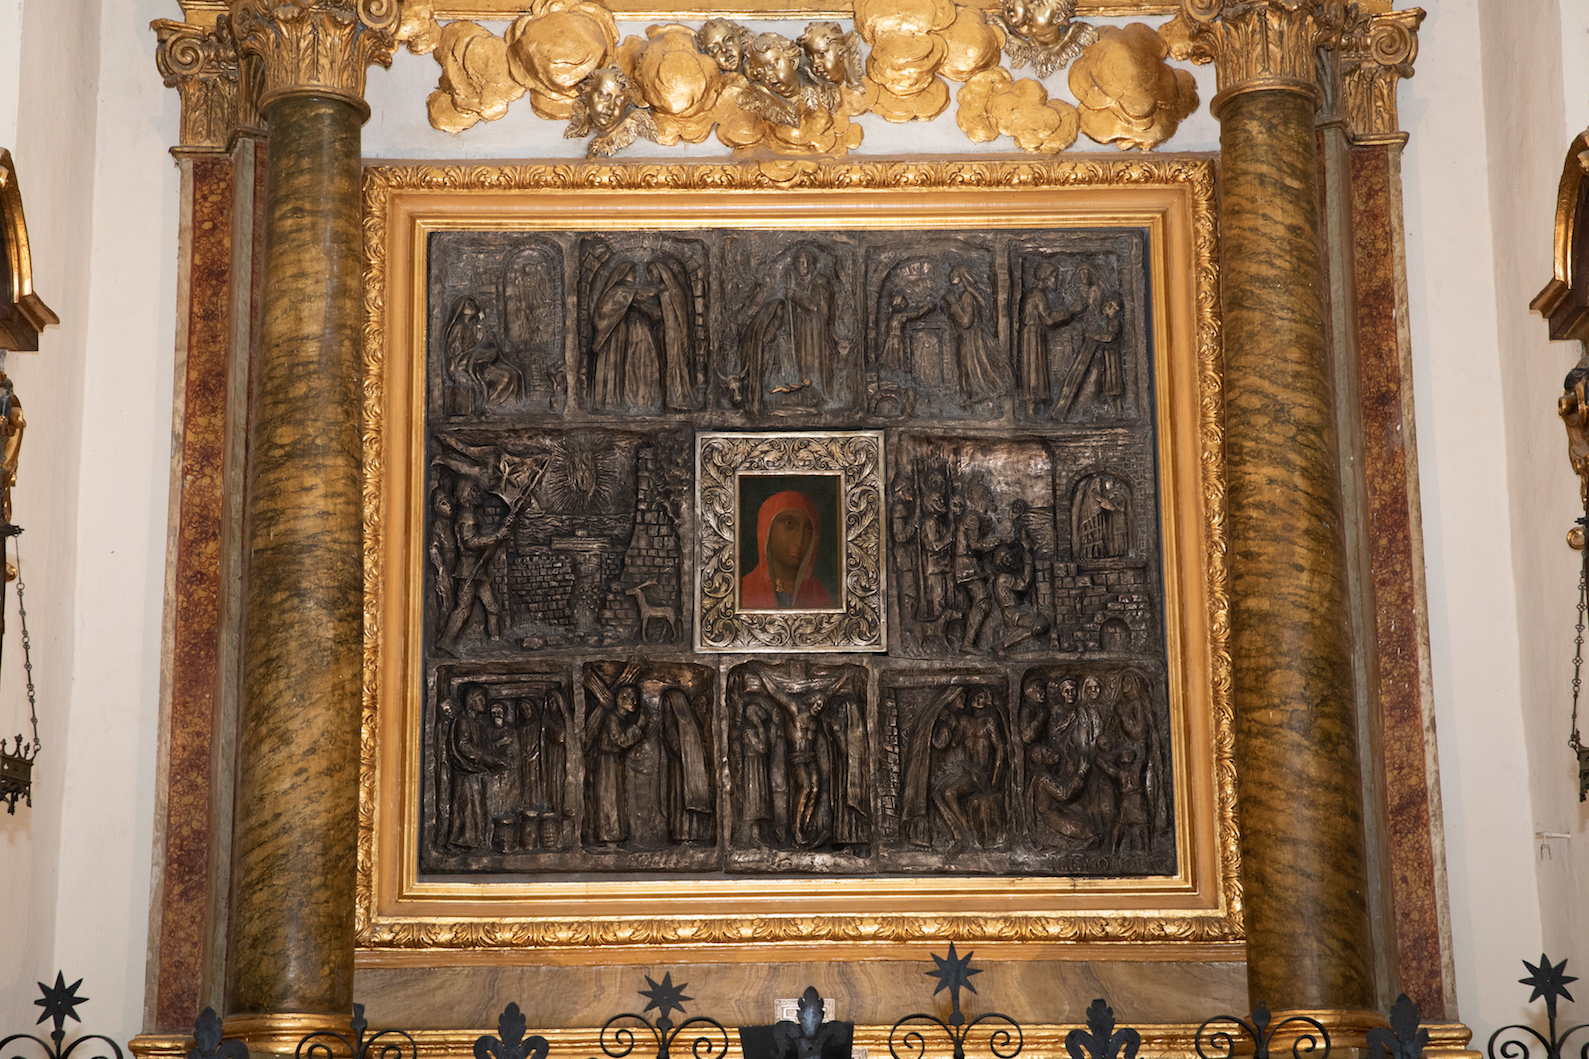 600 Mitglieder des Malteserordens mit dem Großmeister auf Pilgerreise in Assisi.